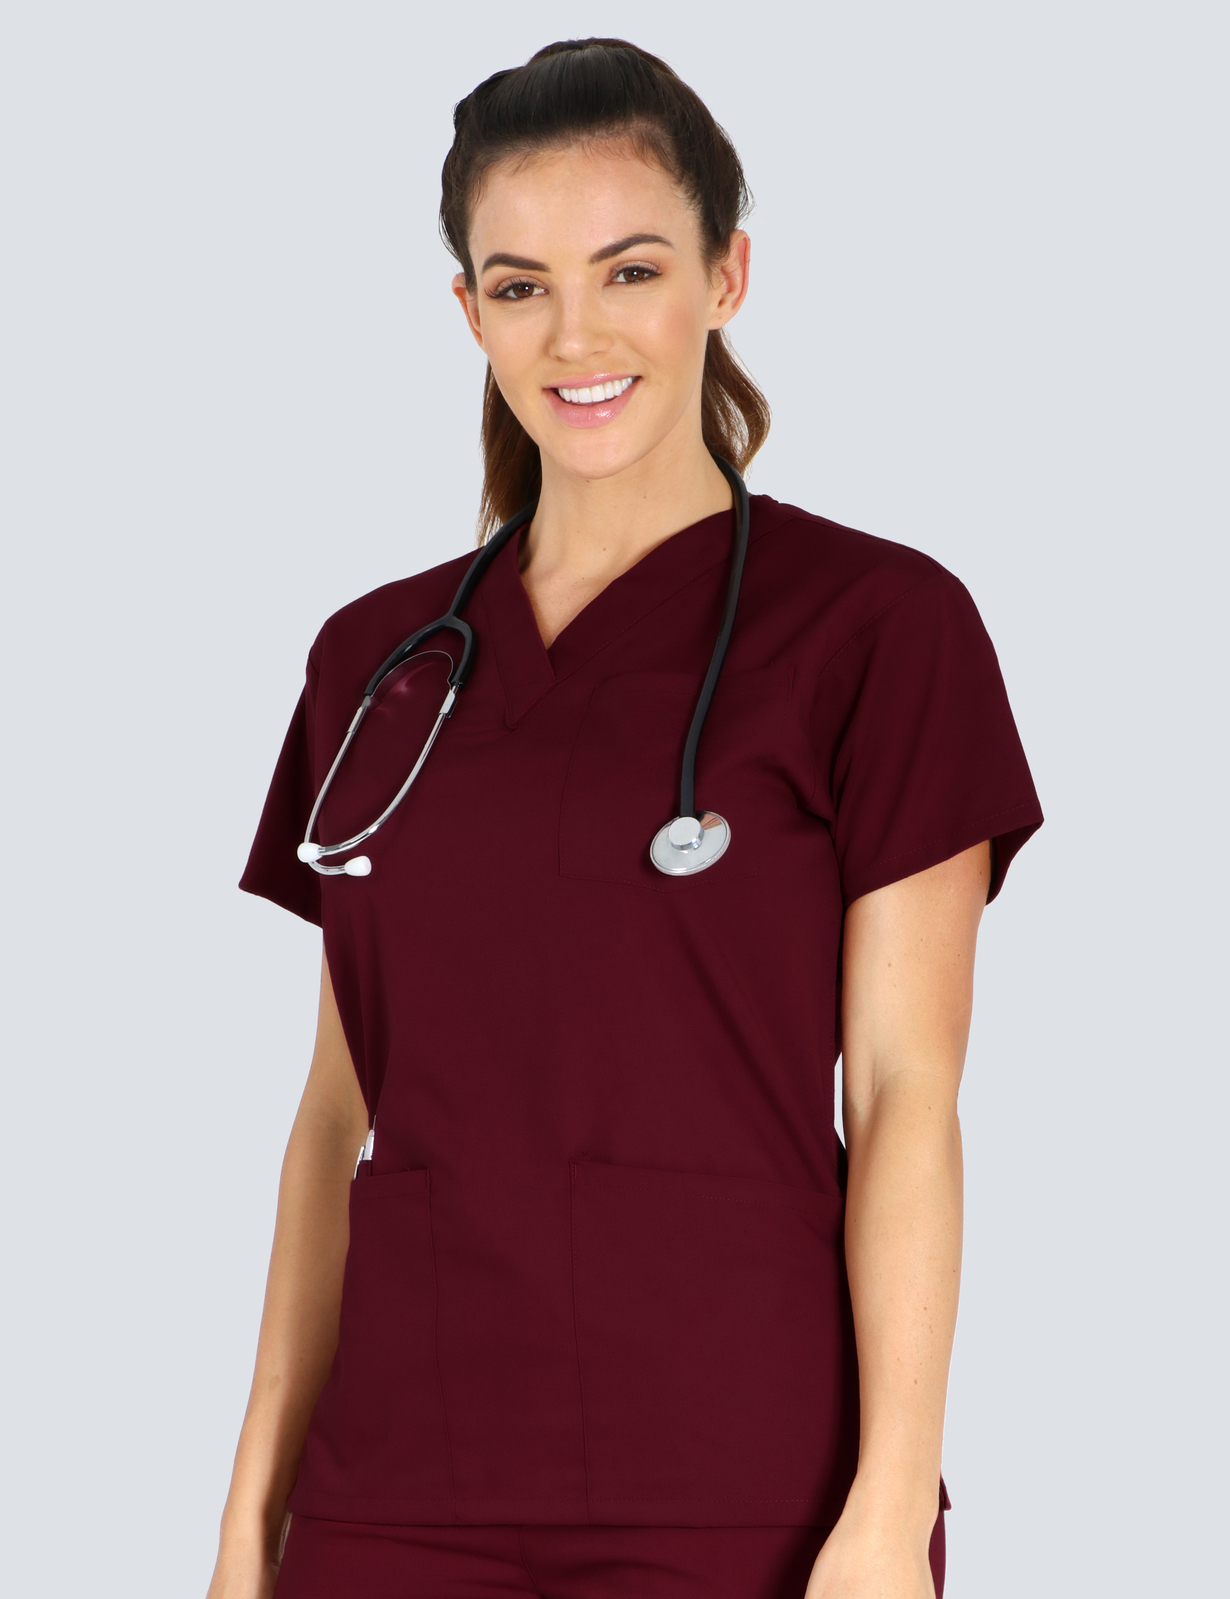 Queensland Children's Hospital Emergency Department Doctor Uniform Top  Bundle (4 Pocket Top in Burgundy  incl Logos)